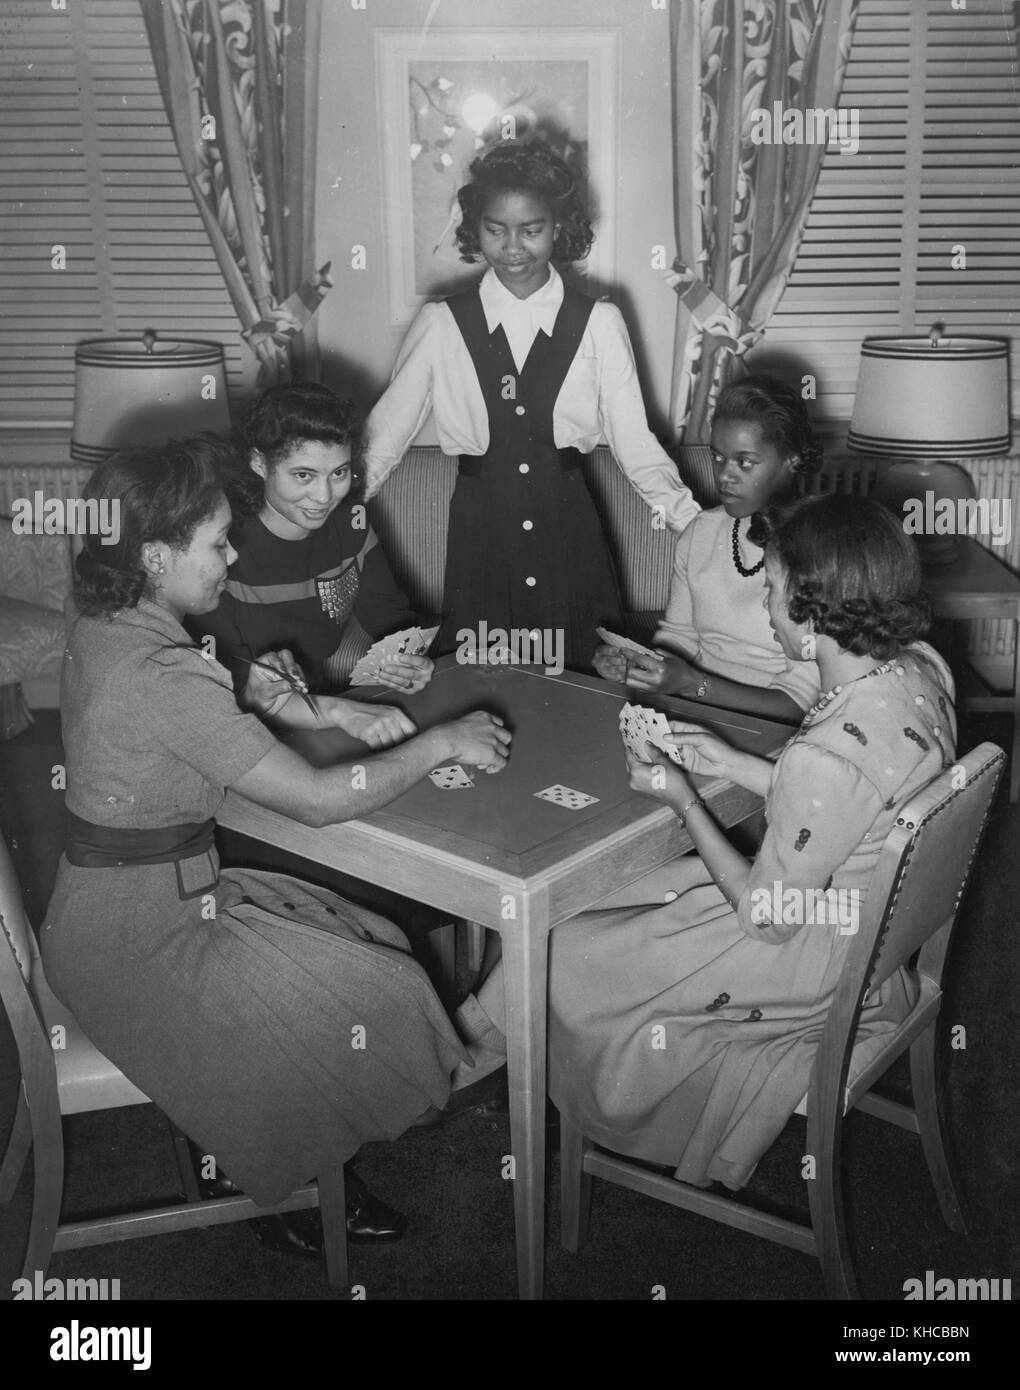 Un groupe de jeunes travailleurs guerre-résidents sont montré bénéficiant d'un jeu de cartes dans la salle de jeux de la résidence hall lucy d slowe, premier gouvernement construits pour les travailleurs de la guerre, Washington, DC, 1942. à partir de la bibliothèque publique de new york. Banque D'Images